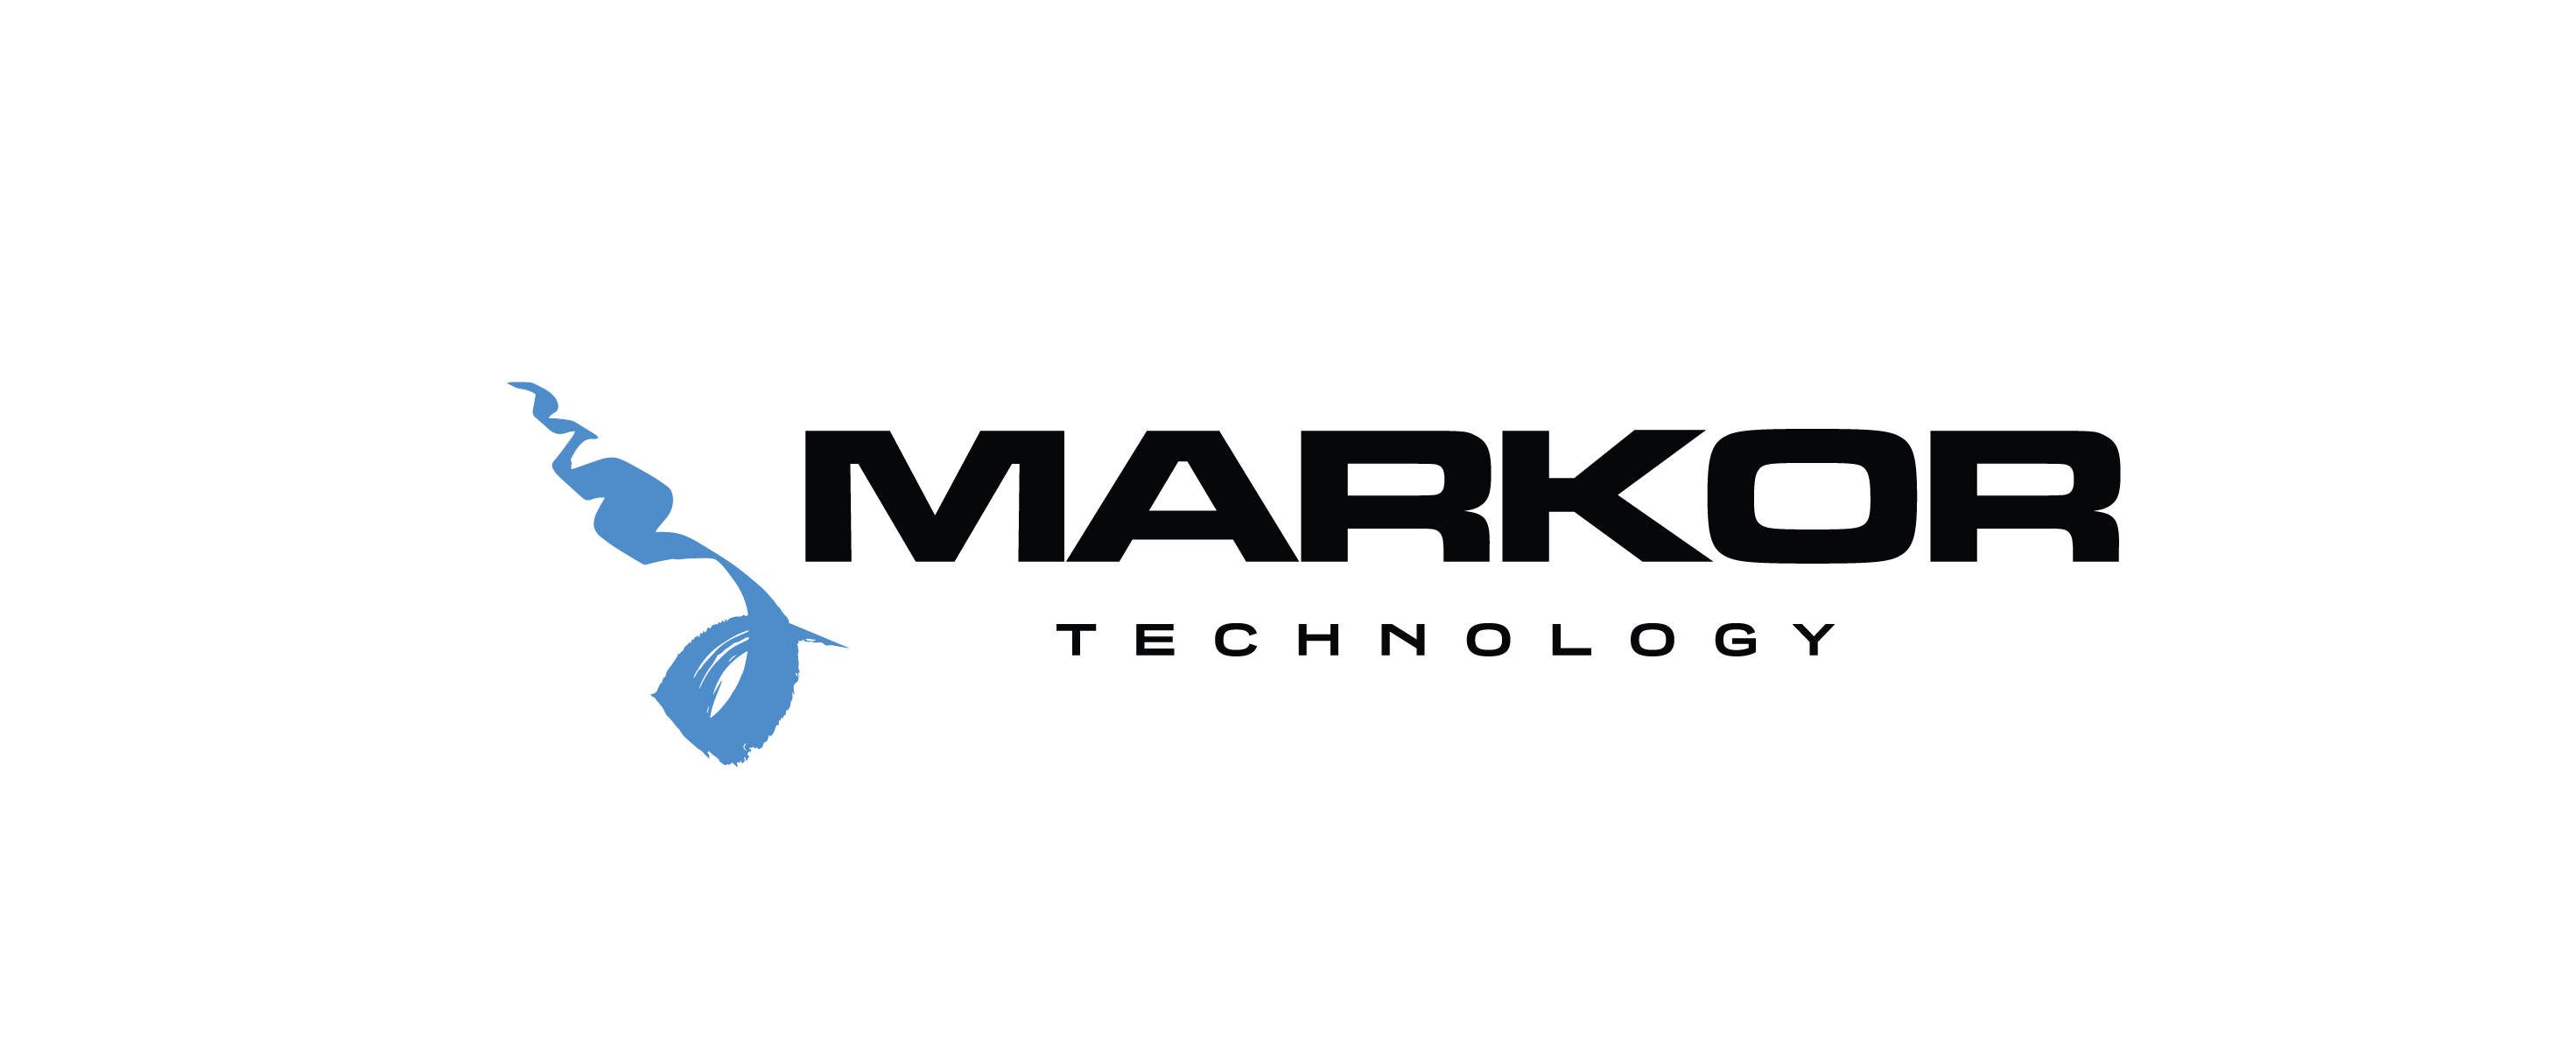 Markor Technology juegos